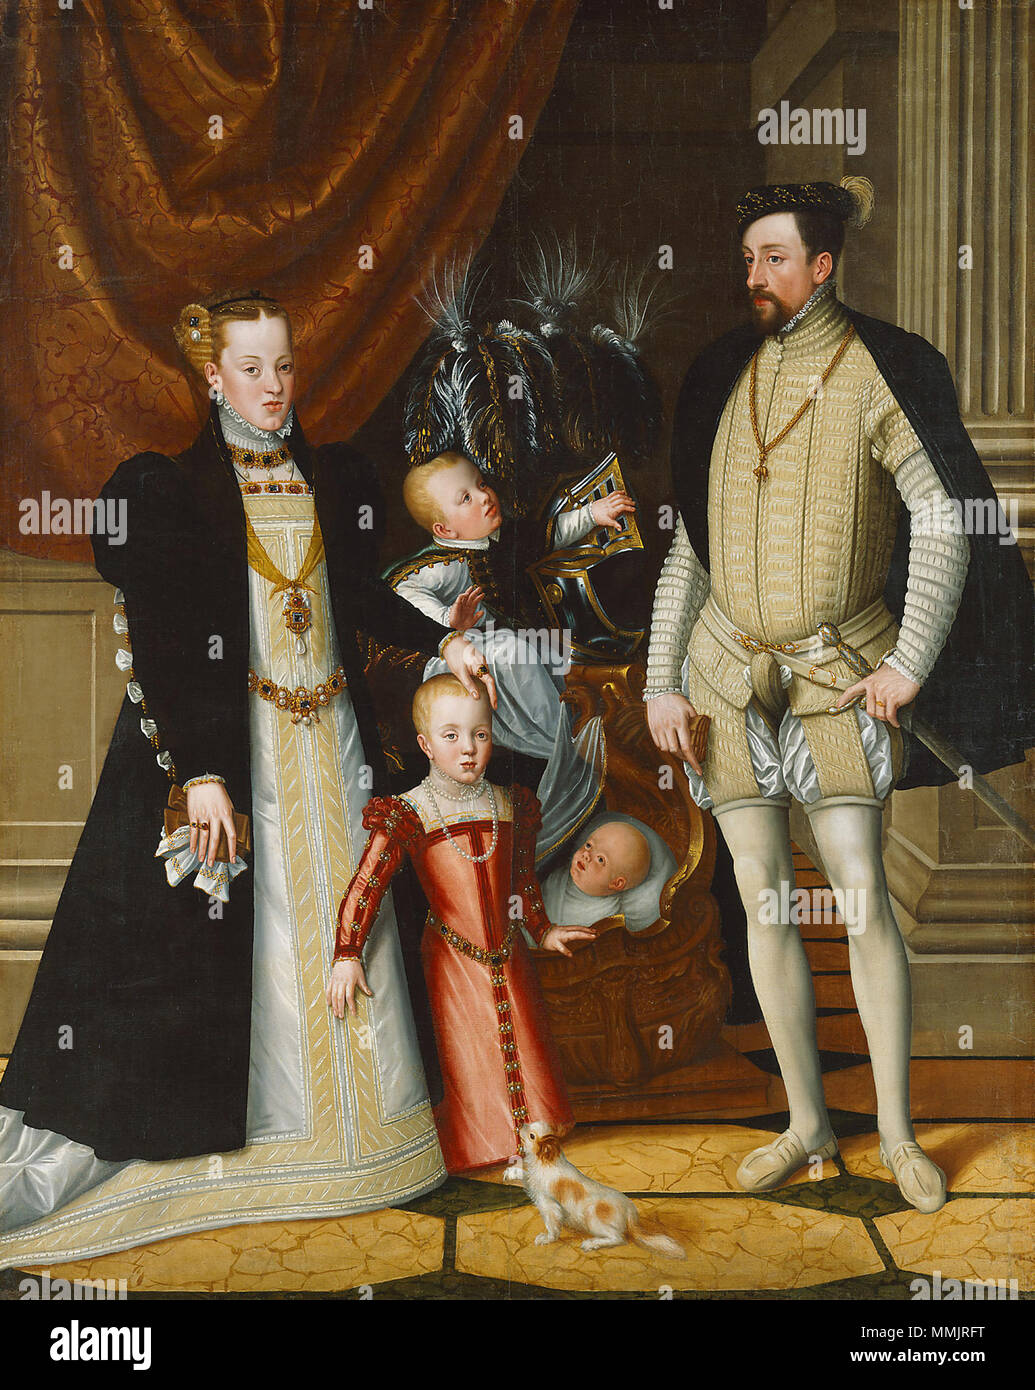 L'Empereur Maximilien II d'Autriche et son épouse l'Infante Maria de l'Espagne avec leurs enfants.. Deutsch : um 1563 nach einer Vorlage von 1553/54 . Giuseppe Arcimboldi 003 Banque D'Images